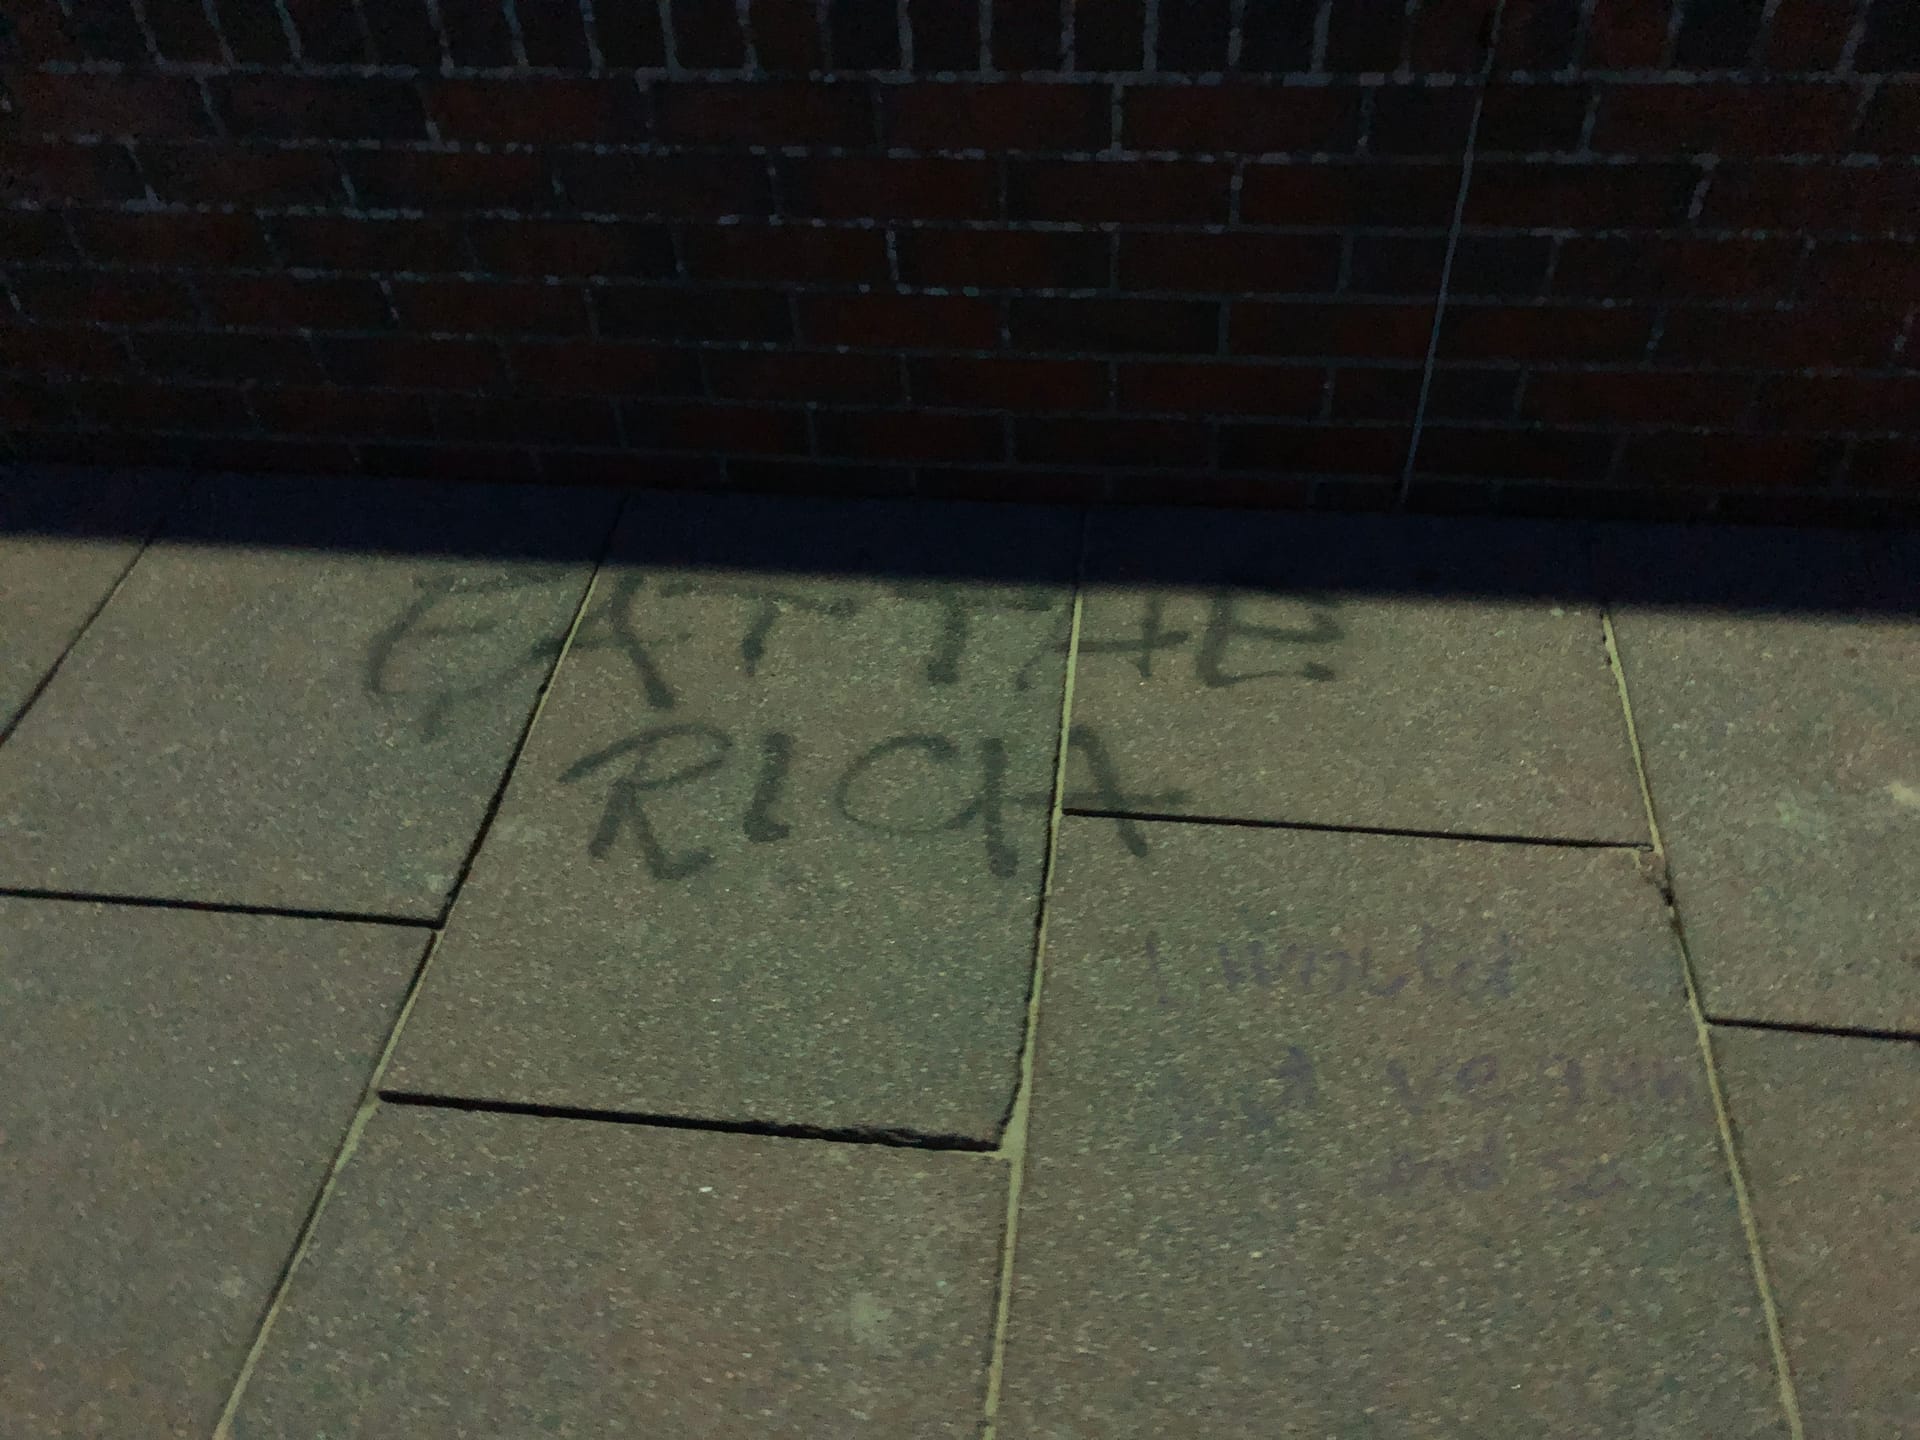 Auch auf dem Boden der Westerländer Promenade sind immer wieder Graffitis zu sehen: Hier wird mit dem Spruch "Eat the rich" (dt. "Esst die Reichen") gegen reiche Menschen Stimmung gemacht.